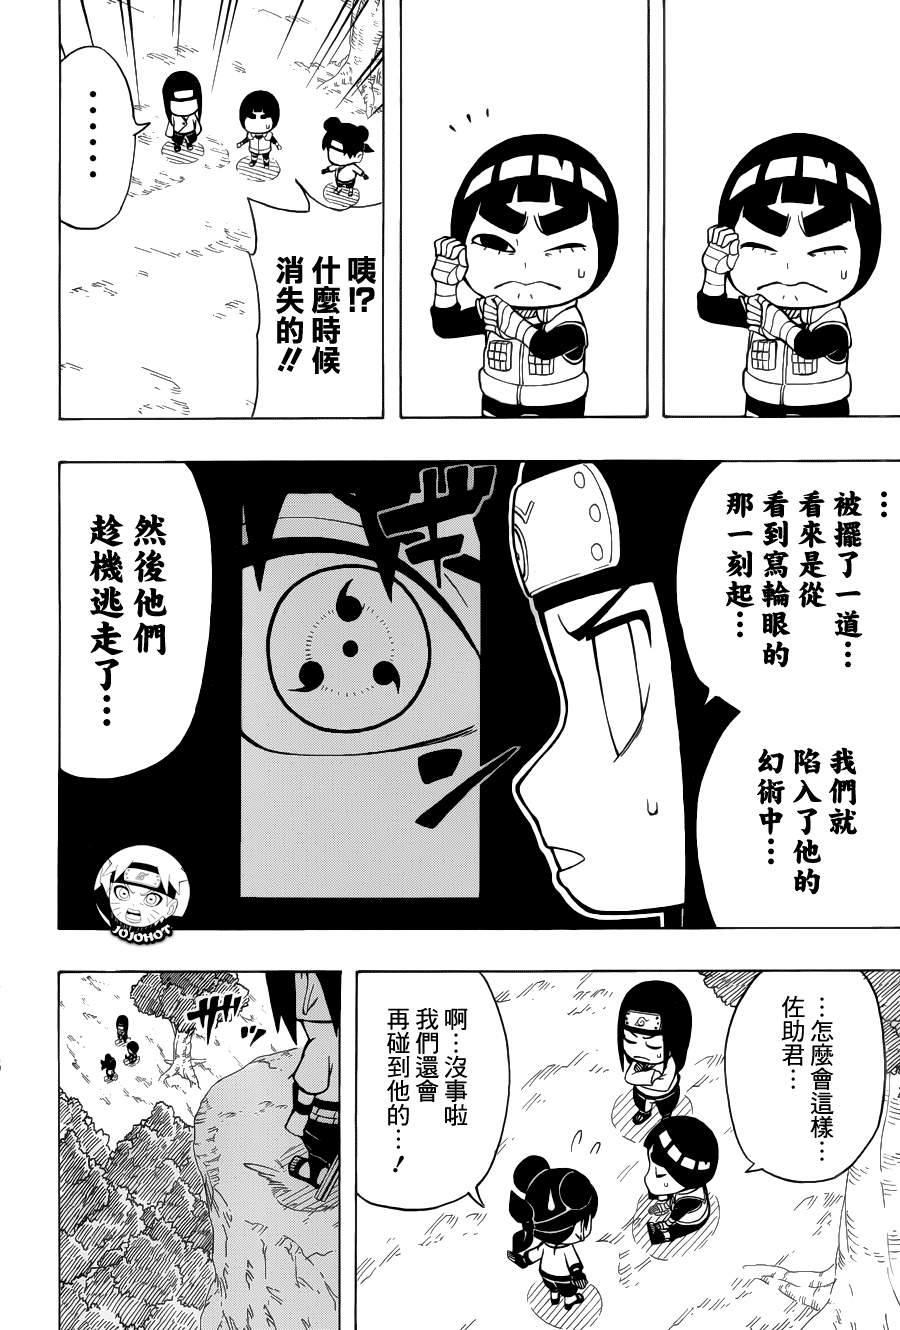 《洛克李之青春活力全开忍传》漫画 洛克李19集